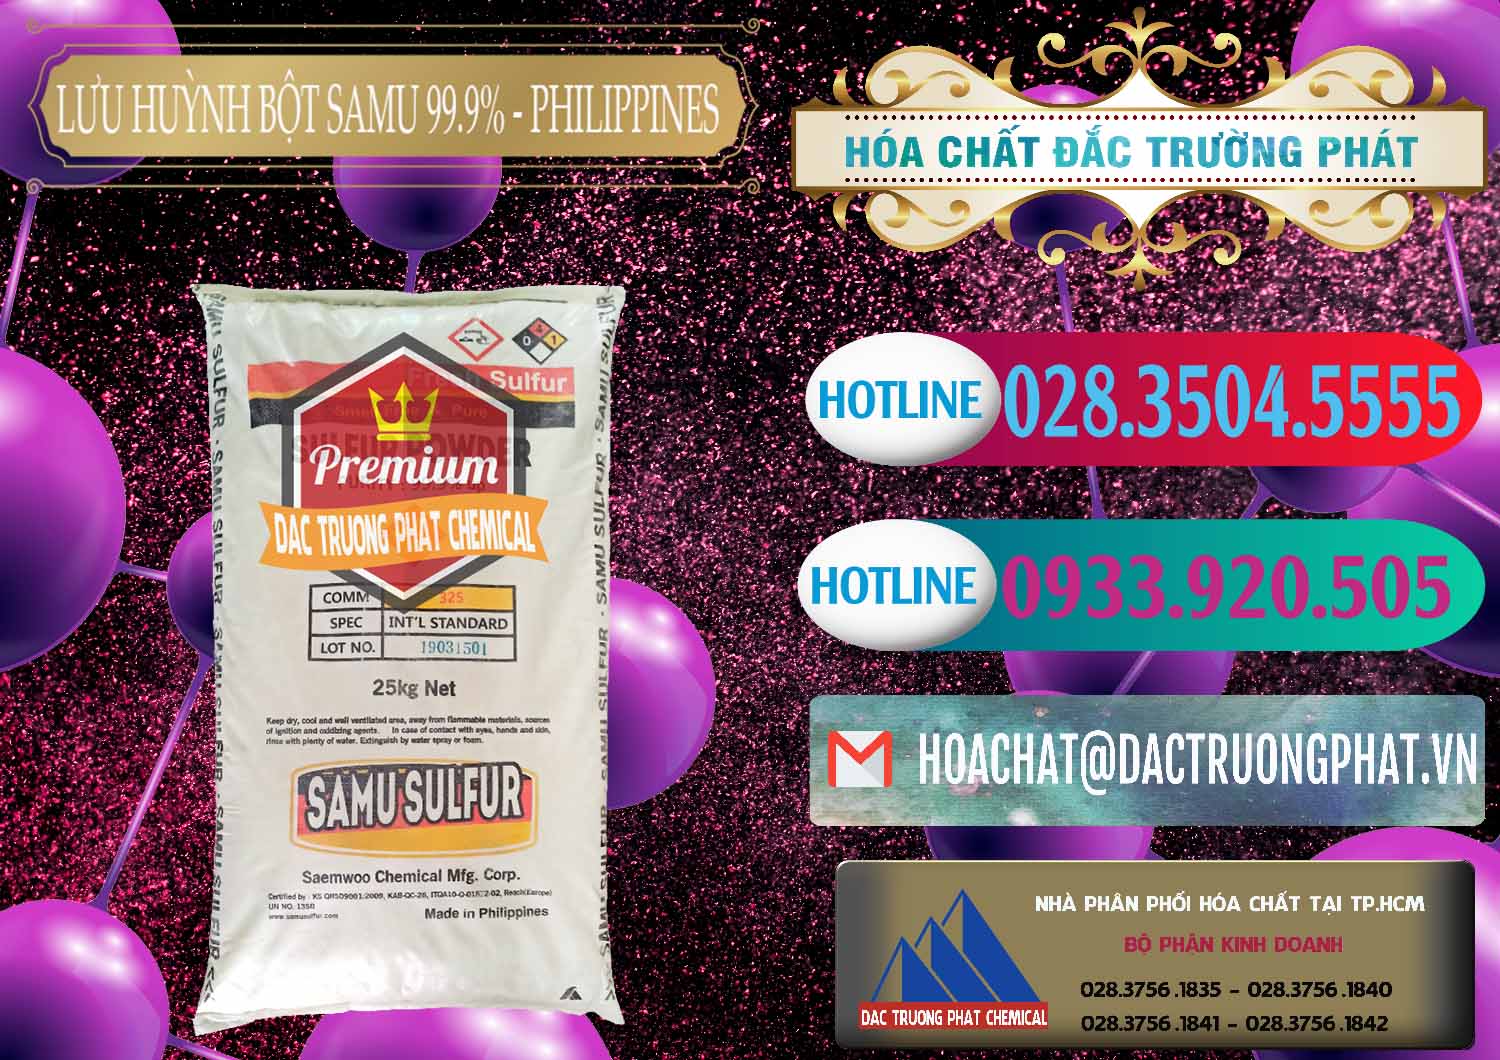 Chuyên cung cấp - bán Lưu huỳnh Bột - Sulfur Powder Samu Philippines - 0201 - Chuyên phân phối - kinh doanh hóa chất tại TP.HCM - truongphat.vn